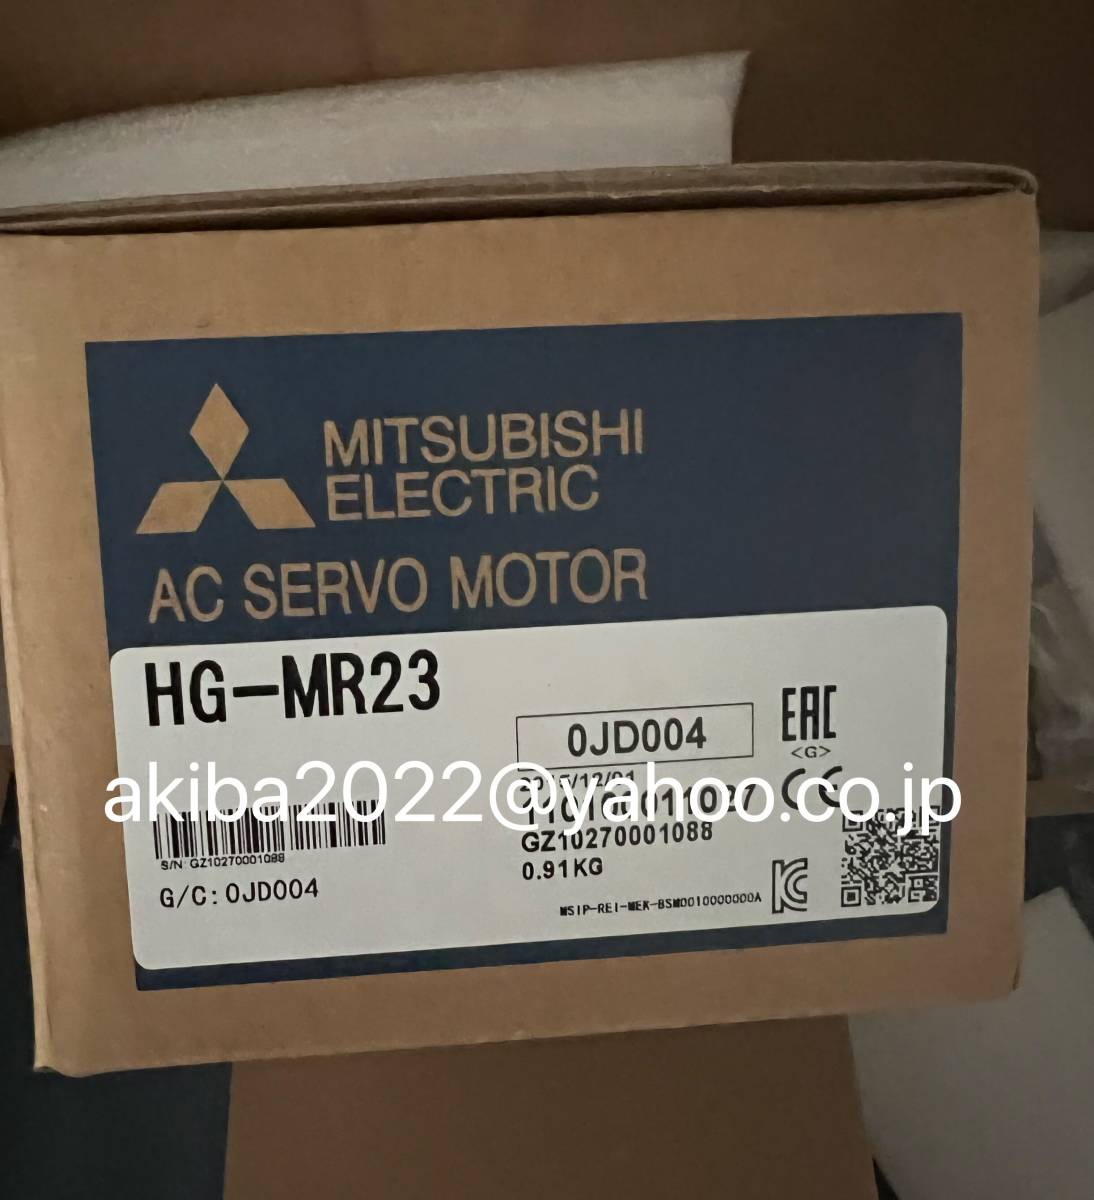 マルチボーダーシリーズ 新品☆ MITSUBISHI 三菱電機 サーボモータ HG-MR23 【6ヶ月保証】